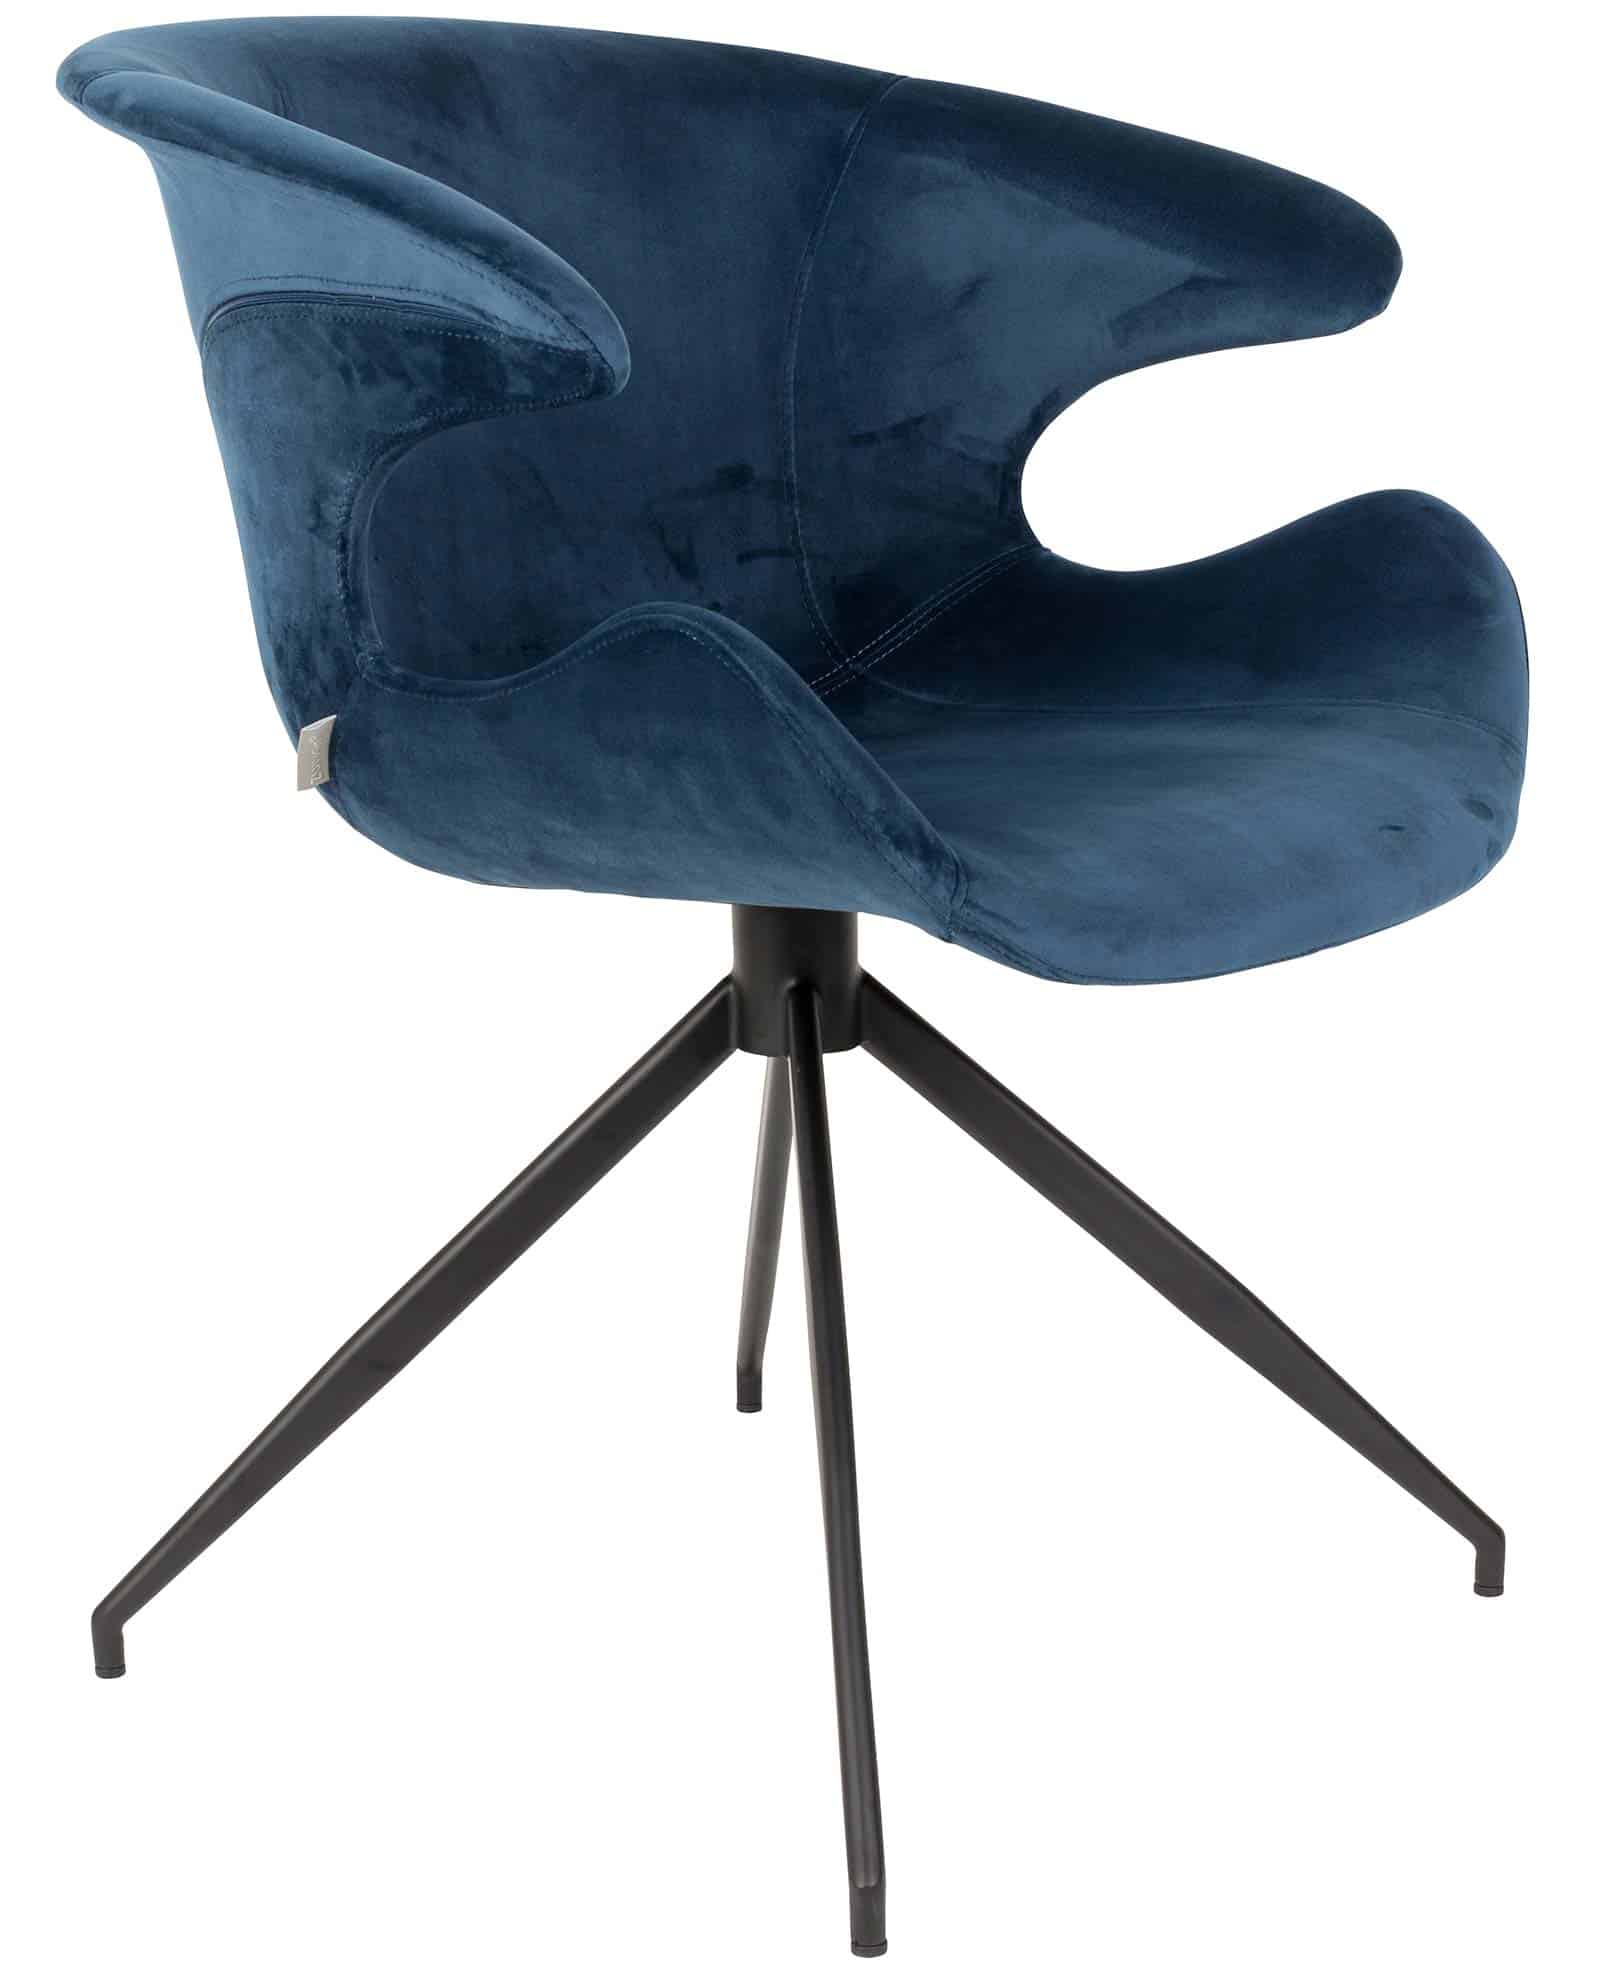 2 x stoel - Designshopp